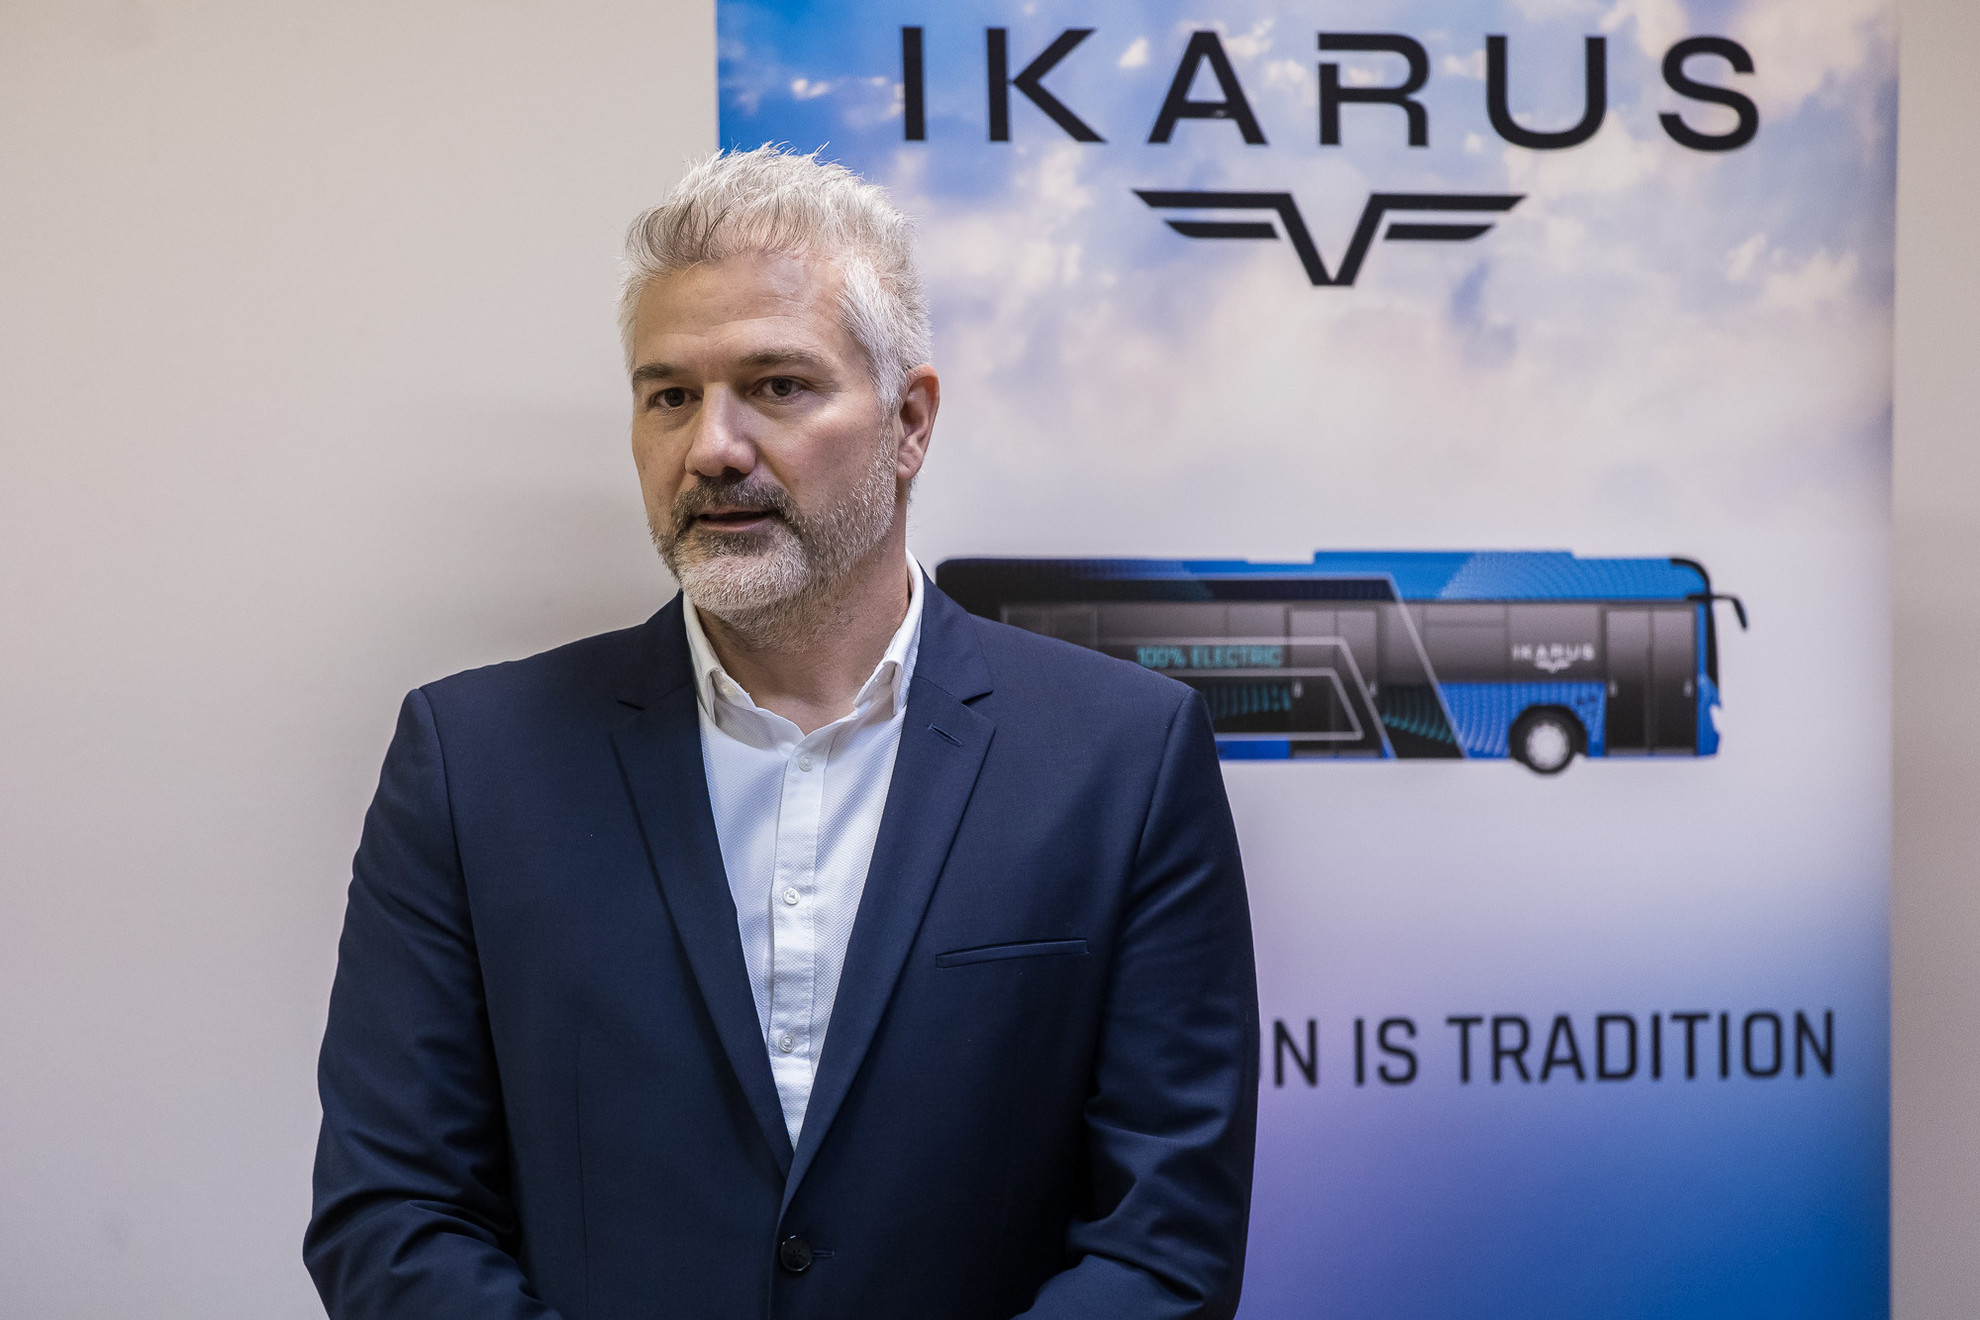 Fehér Roland az Ikarus Járműtechnika Zrt. ügyvezető igazgatója - IKARUS projekt záróesemény